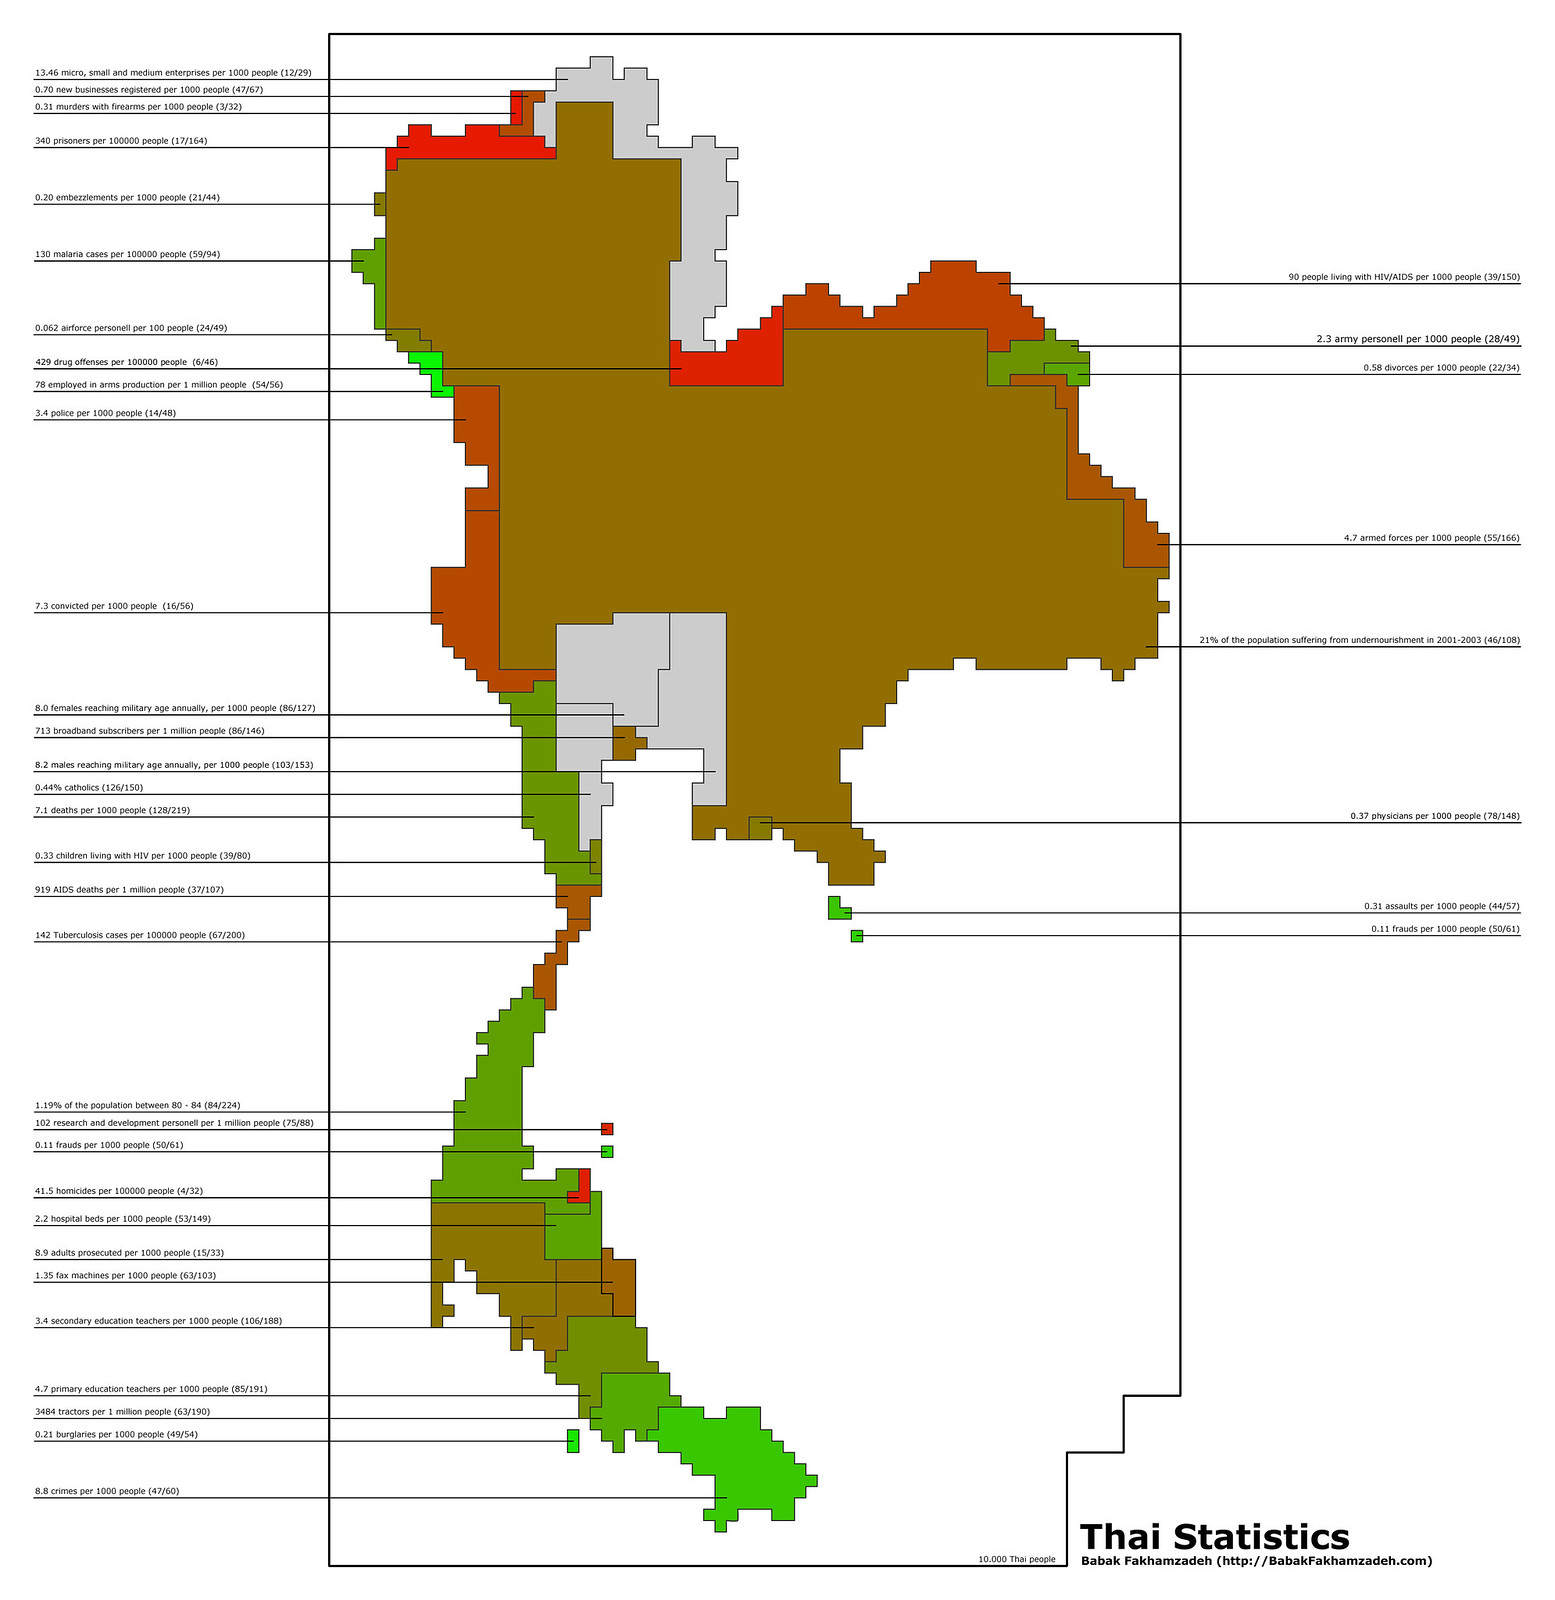 Thai Statistics